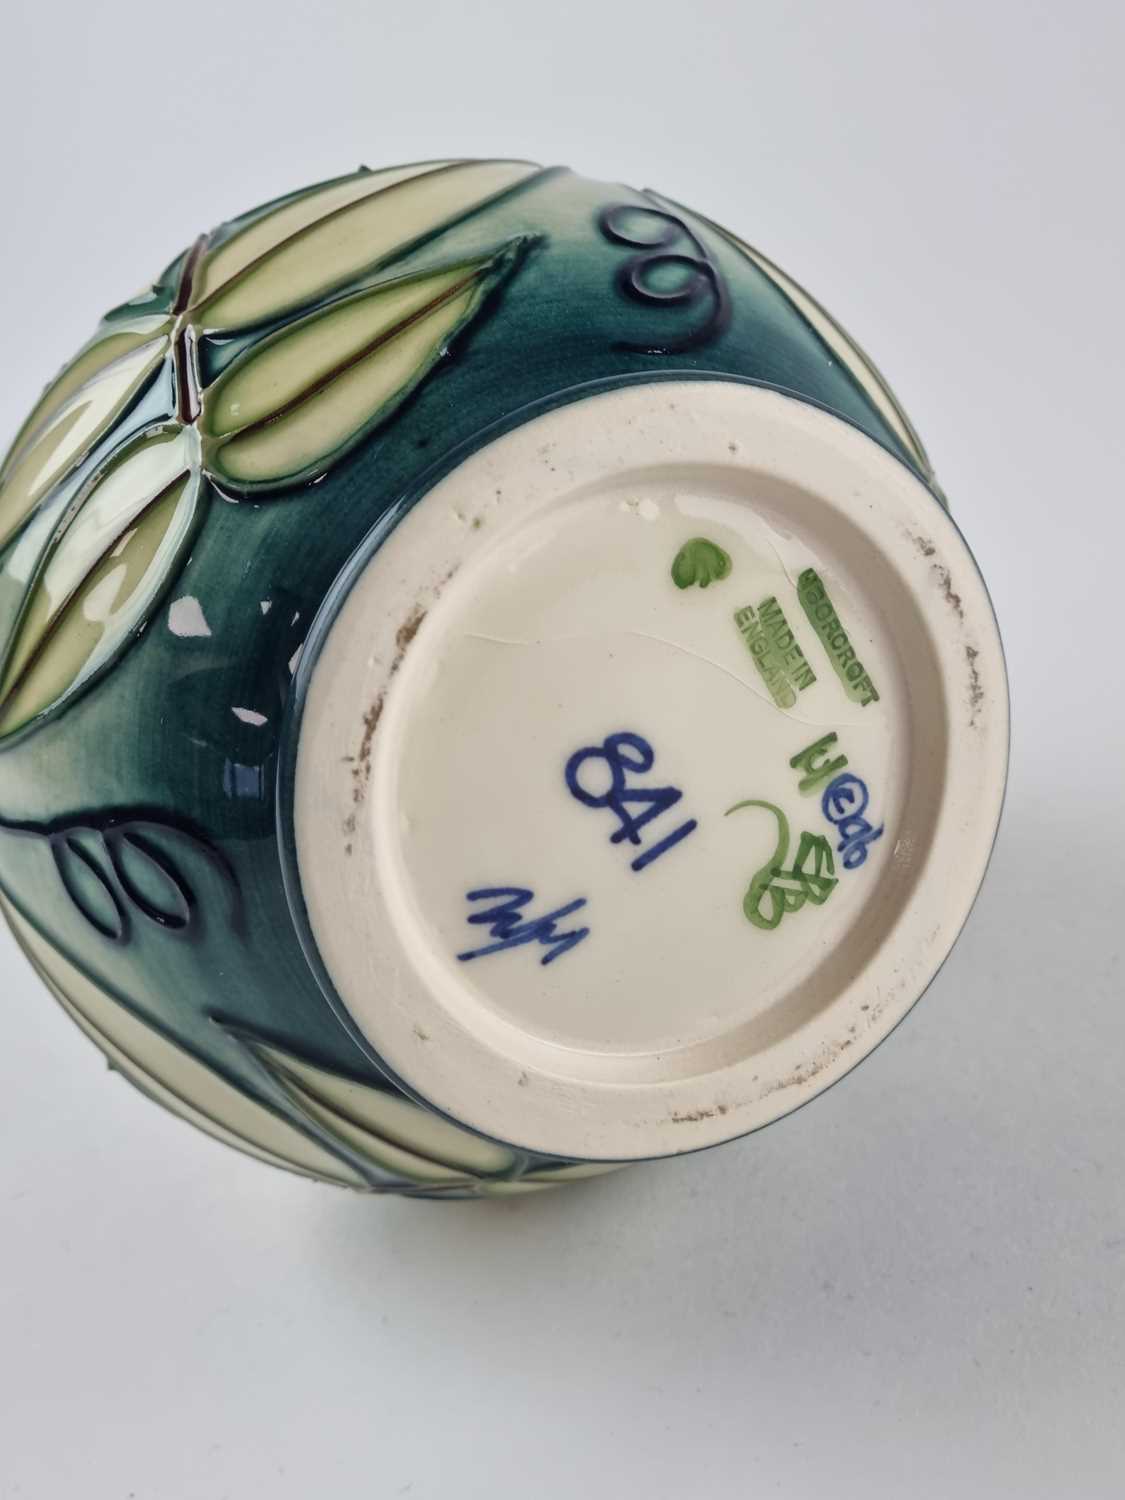 Moorcroft 'Carousel Jasmine' vase designed by Emma Bossons - Image 2 of 2